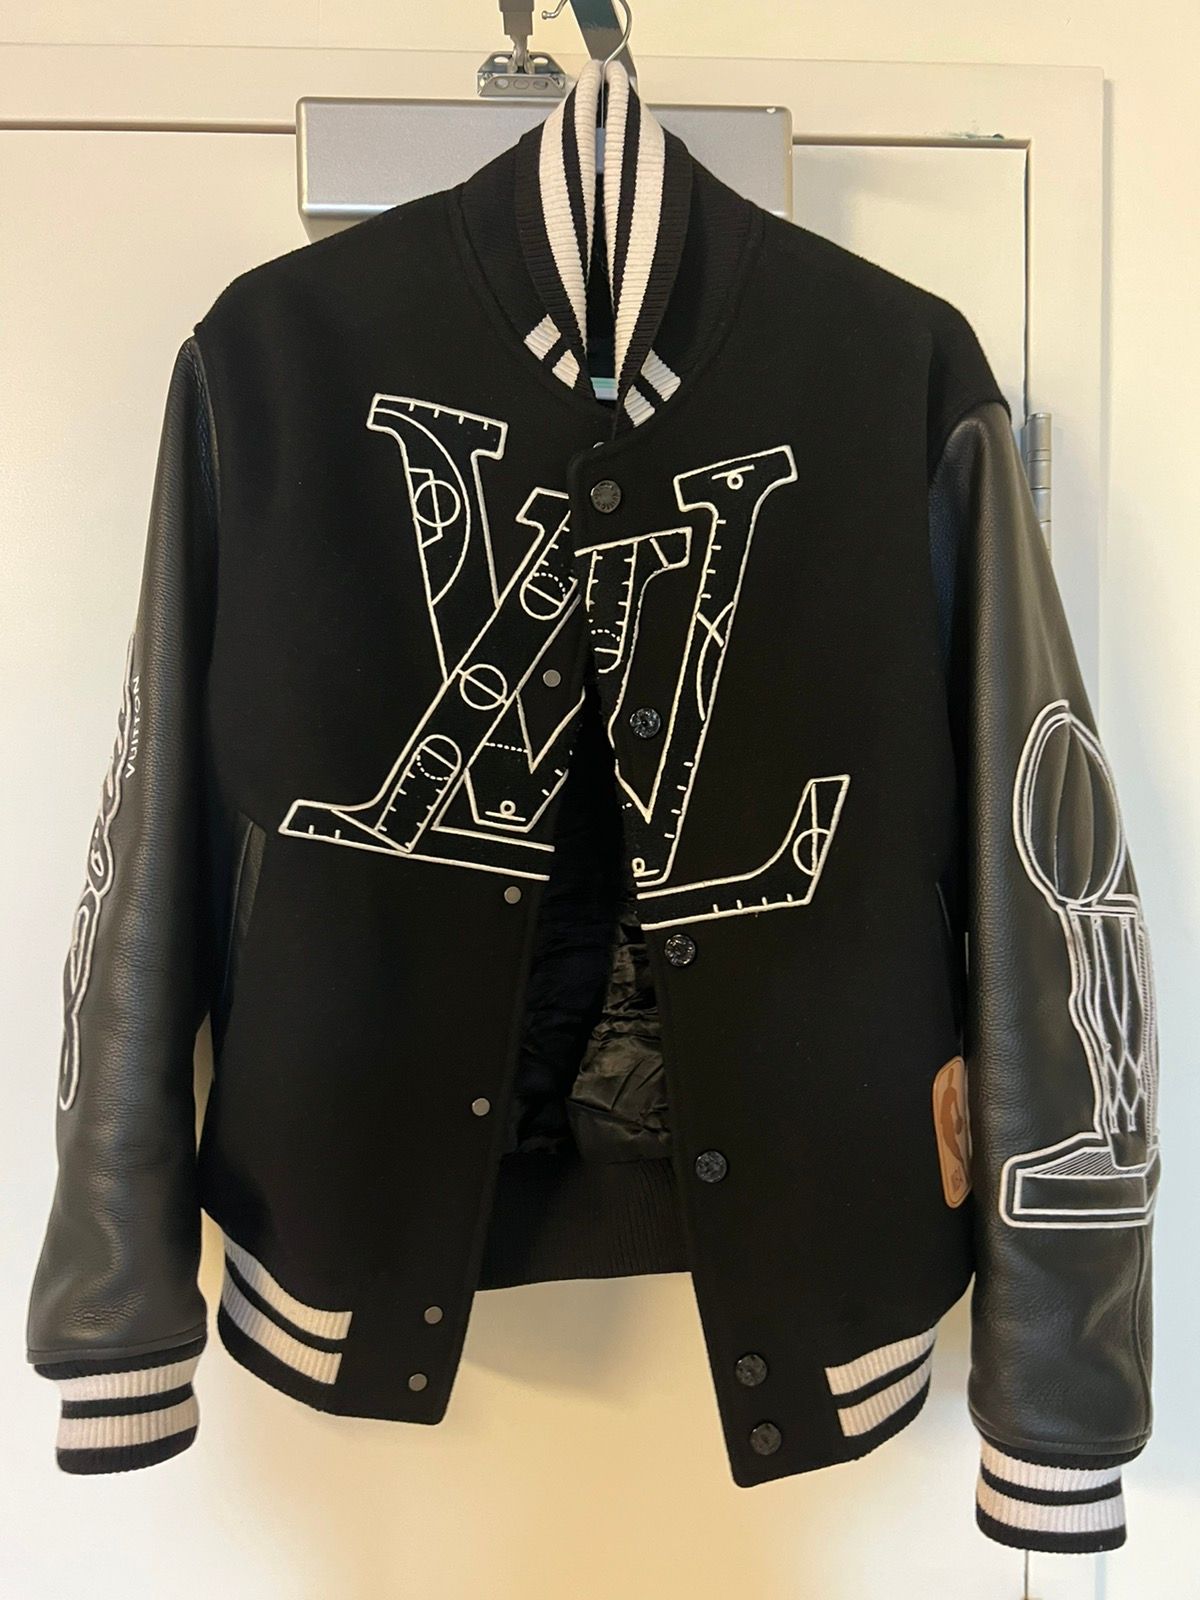 Louis Vuitton x NBA Basketball Black Varsity Jacket